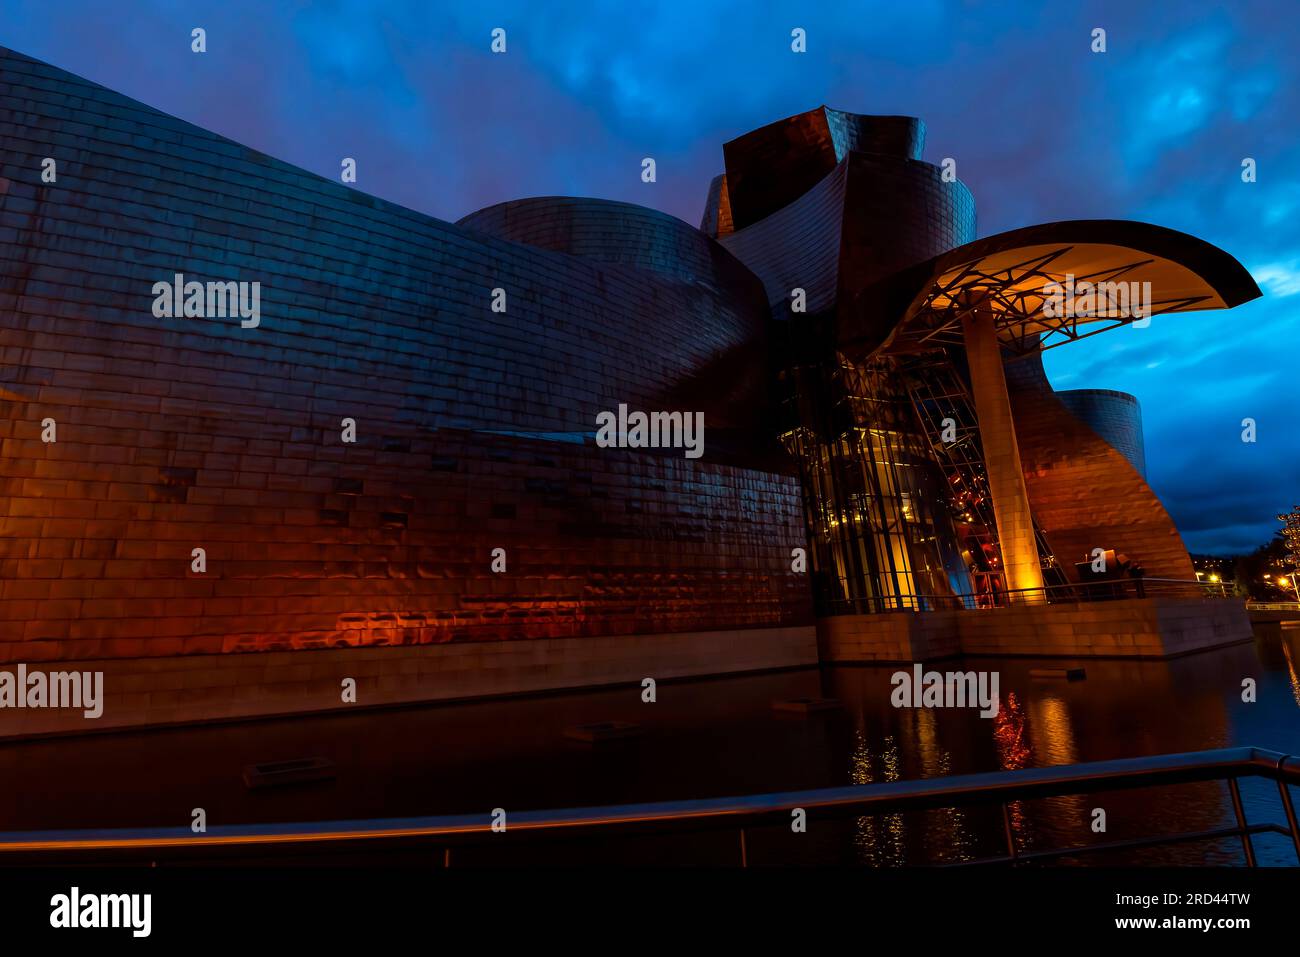 Il Guggenheim Museum Bilbao, progettato dall'architetto Frank Gehry, e situato nella città di Bilbao, Paesi Baschi, Spagna. Foto Stock